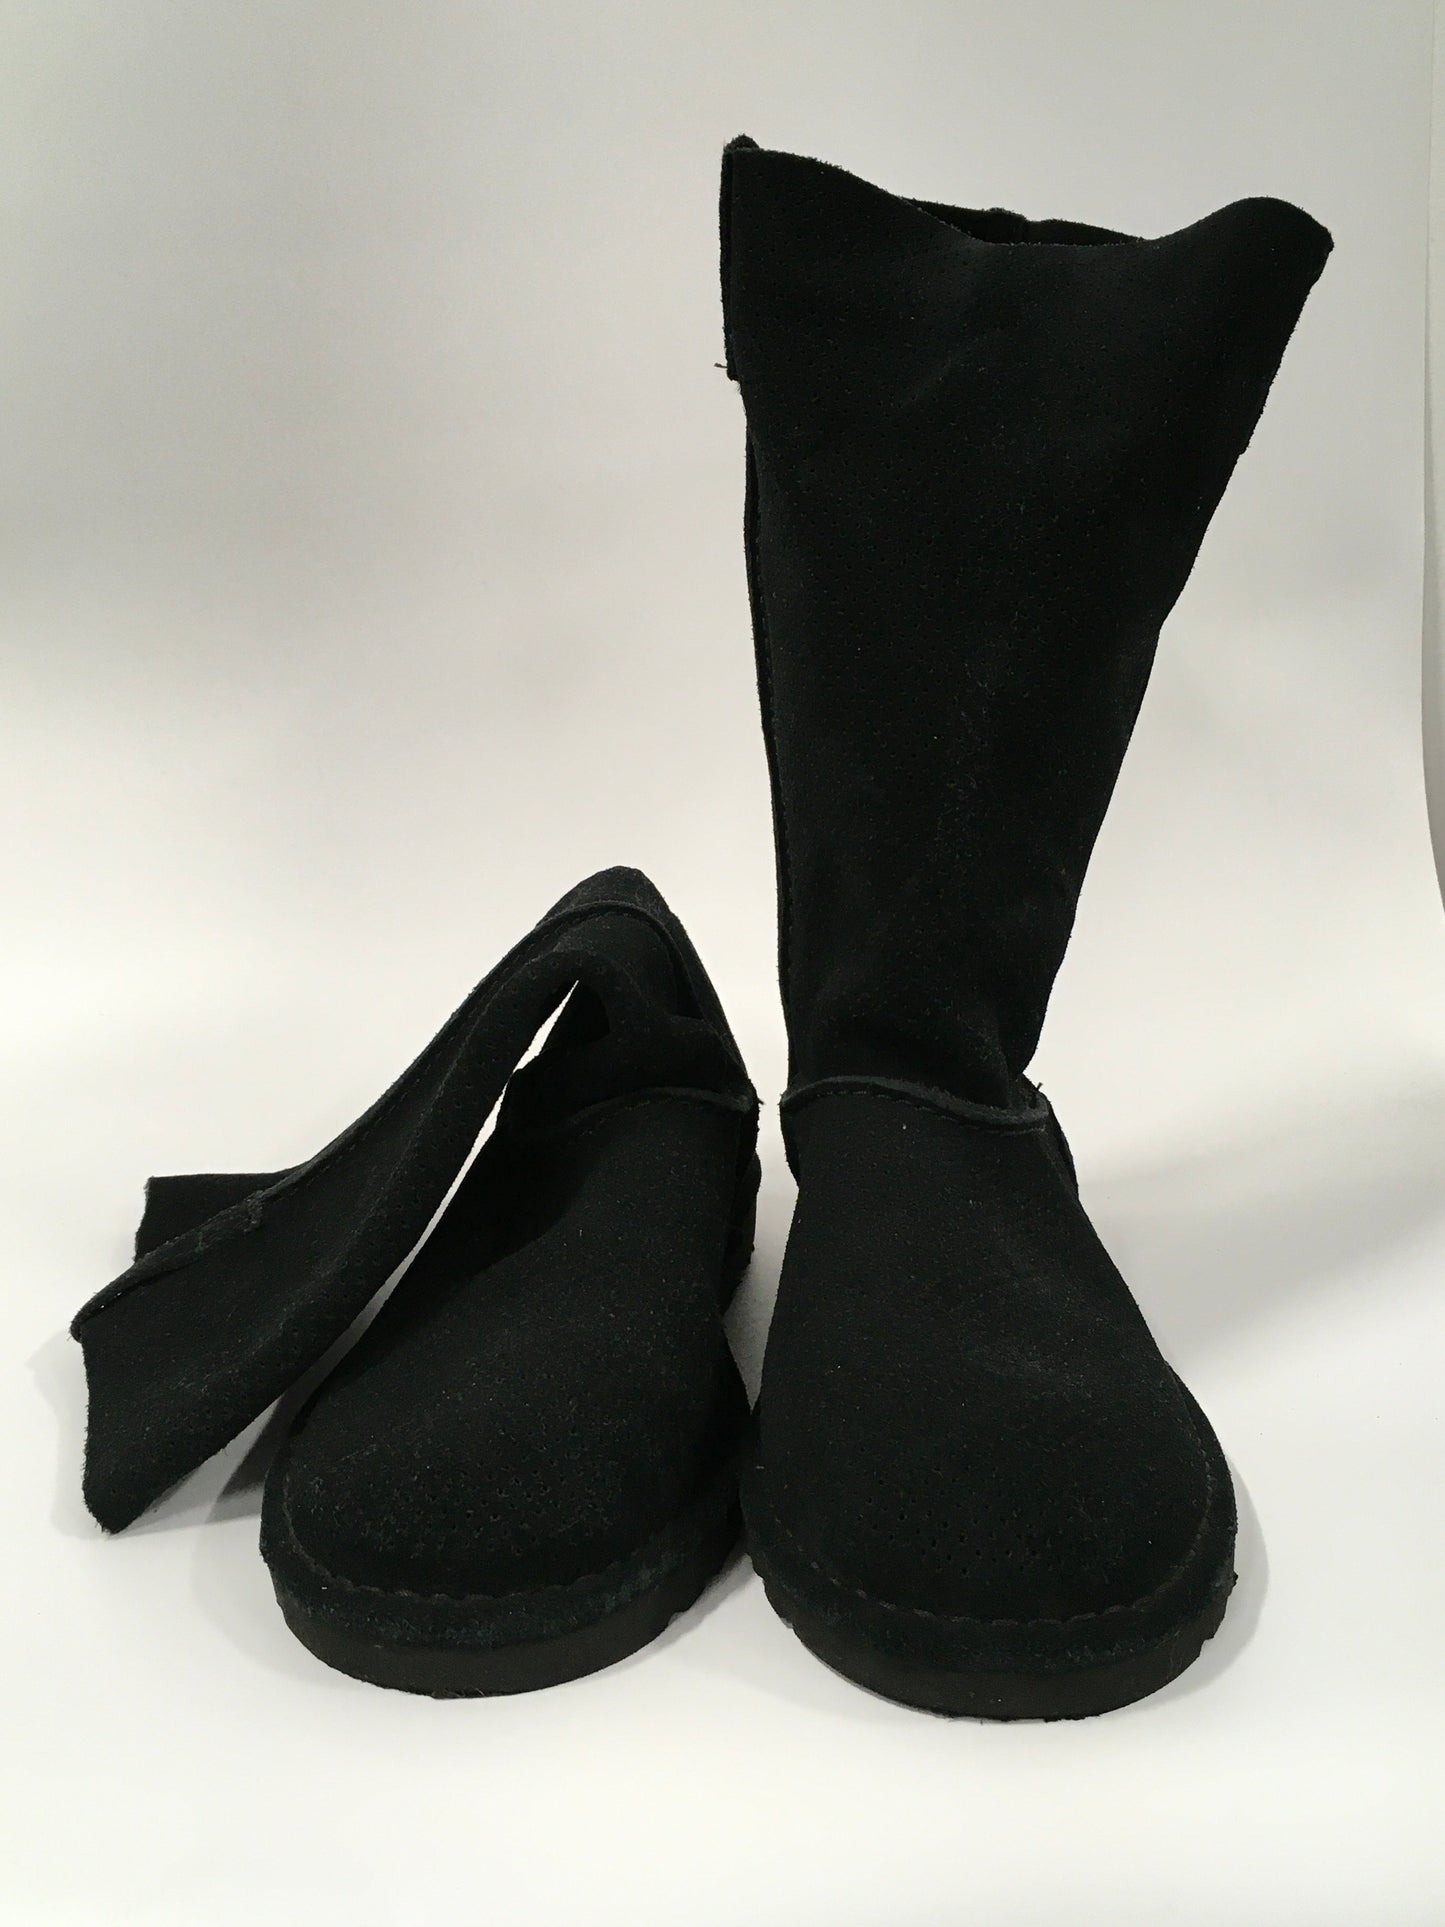 Black Boots Mid-calf Flats Ugg, Size 8